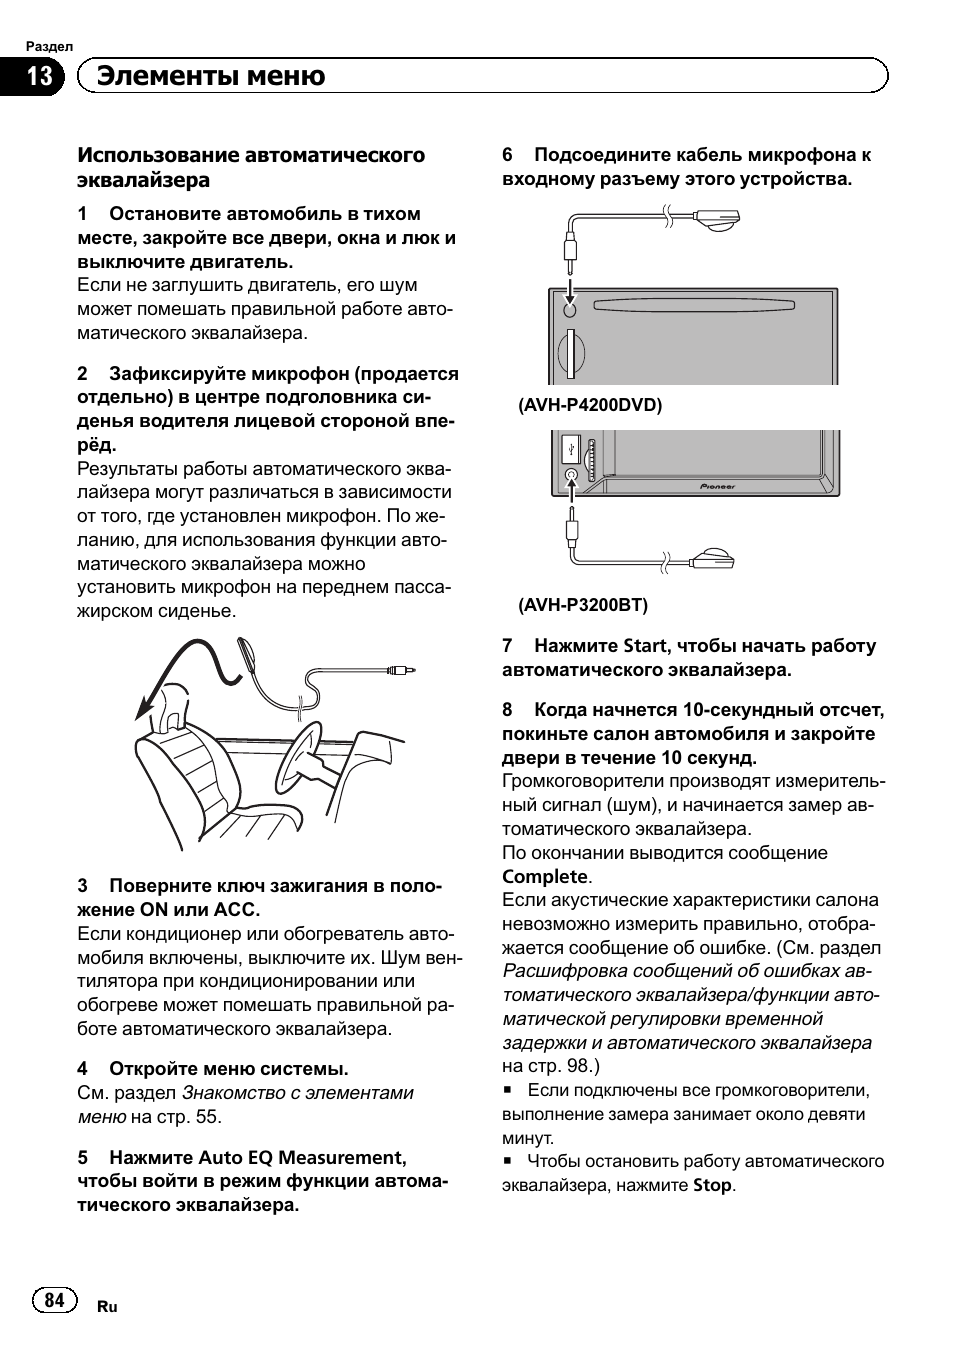 13 элементыменю | Инструкция по эксплуатации Pioneer AVH-P3200BT  RU | Страница 84 / 116